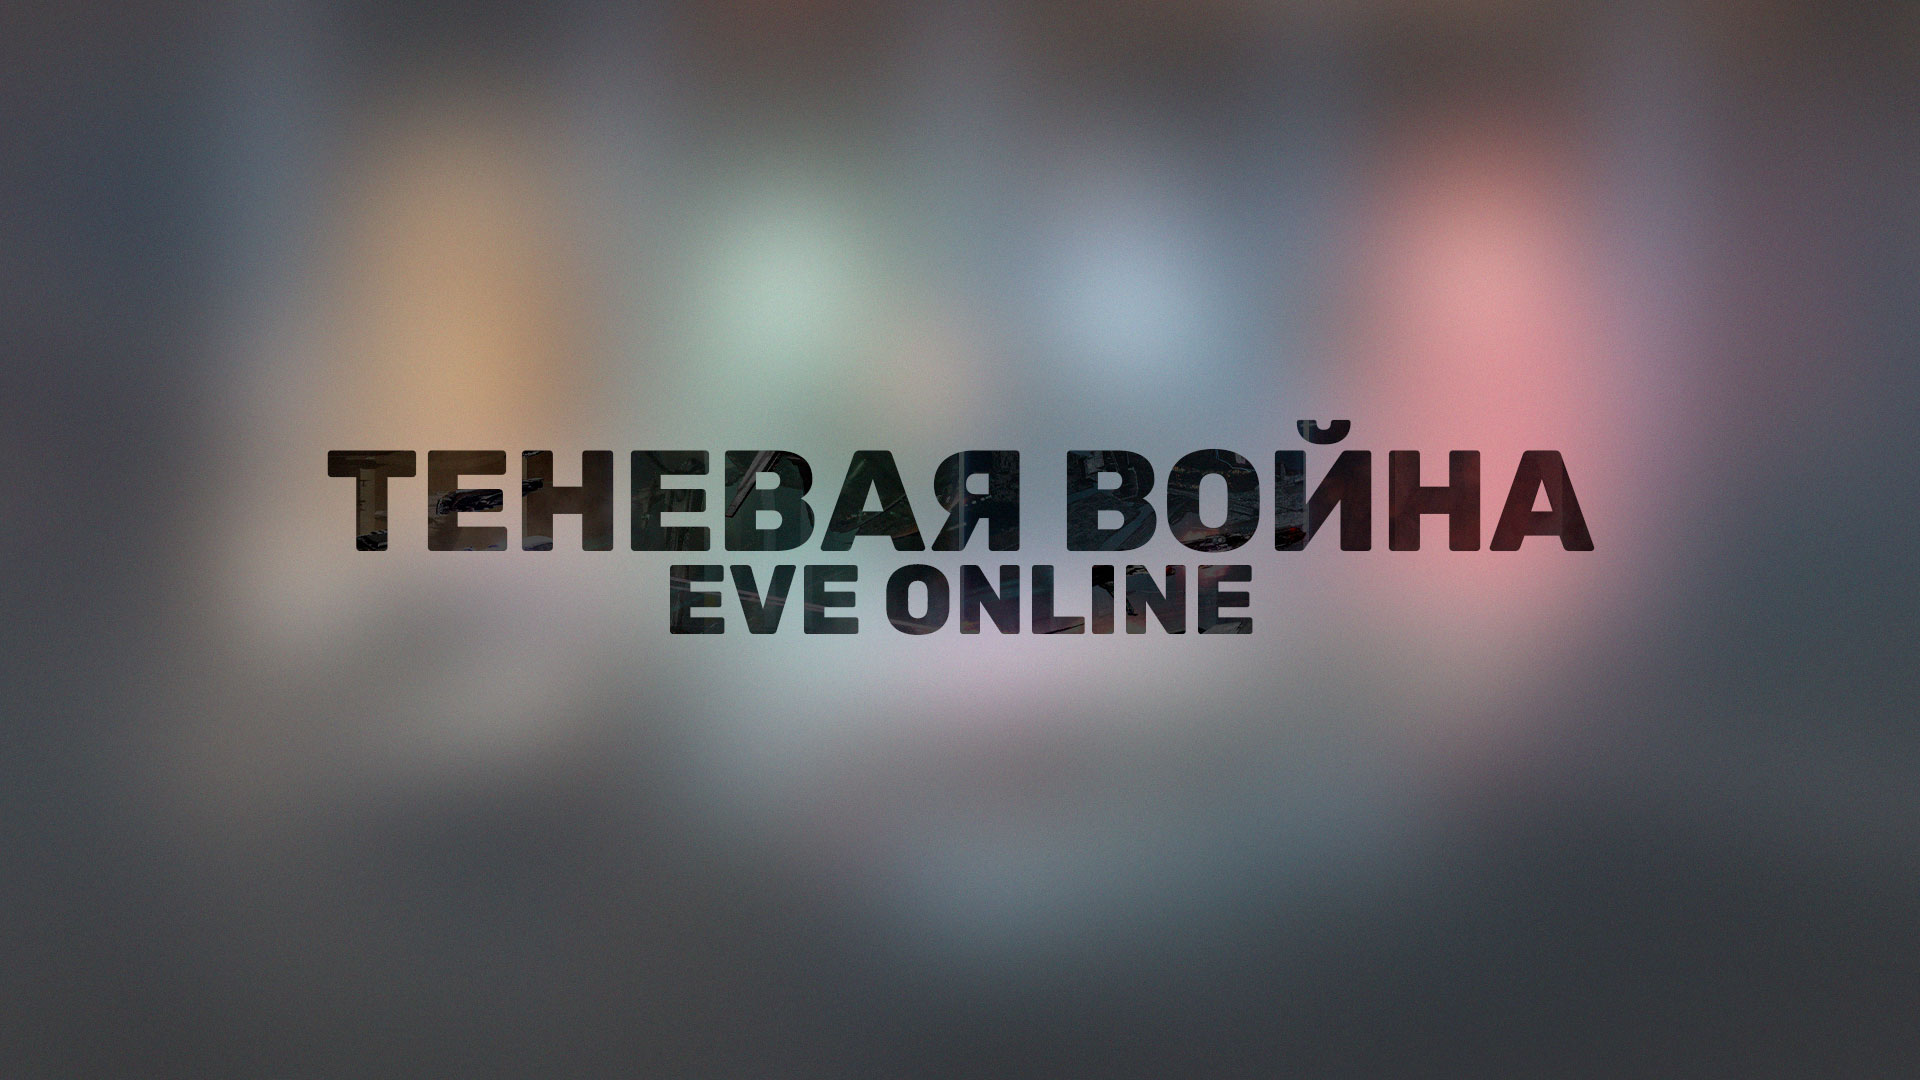 Разработчики EVE Online представили совершенно новое событие, посвященное межгосударственным войнам — «Теневая война».